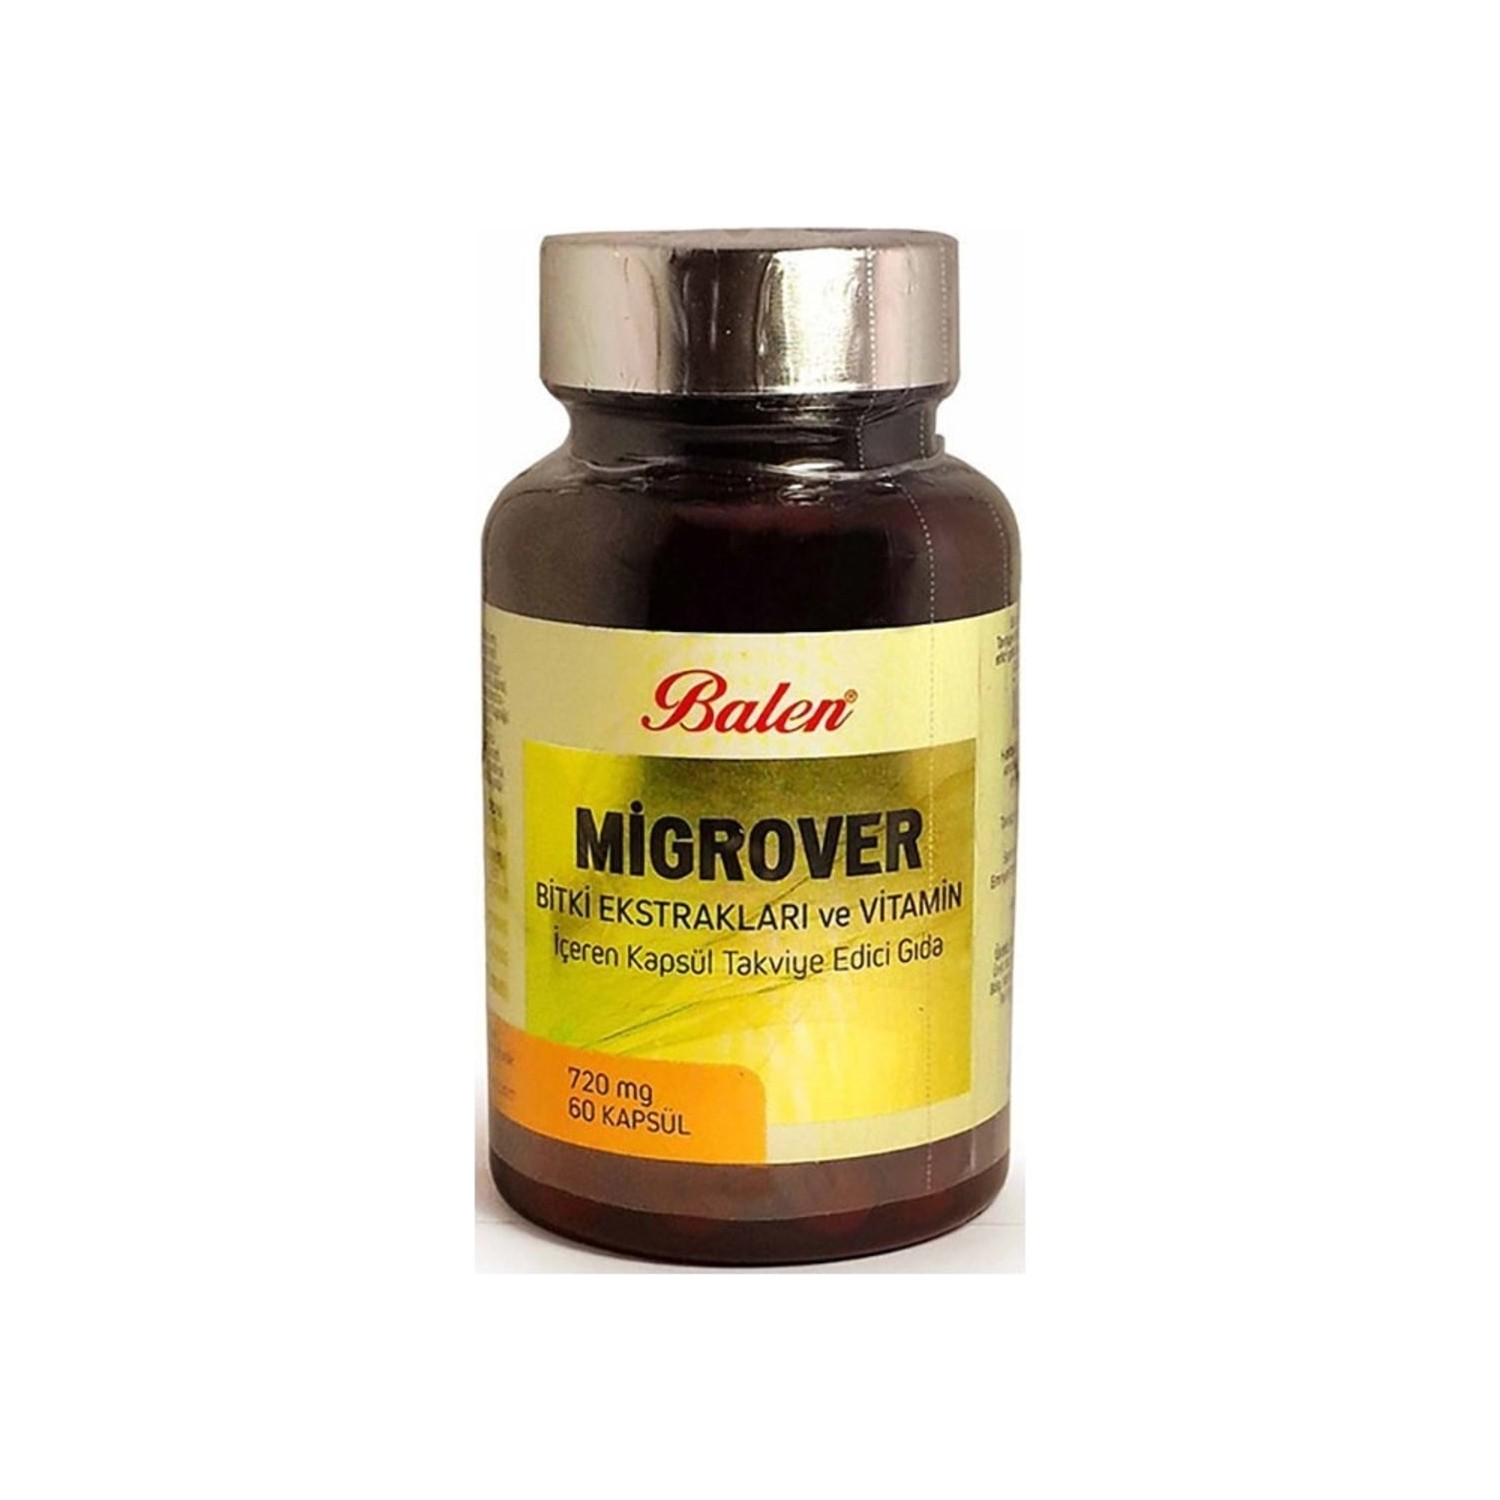 Капсулы Balen Migrover, содержащие растительные экстракты и витамины, 60 капсул, 720 мг капсулы balen migrover содержащие растительные экстракты и витамины 60 капсул 720 мг